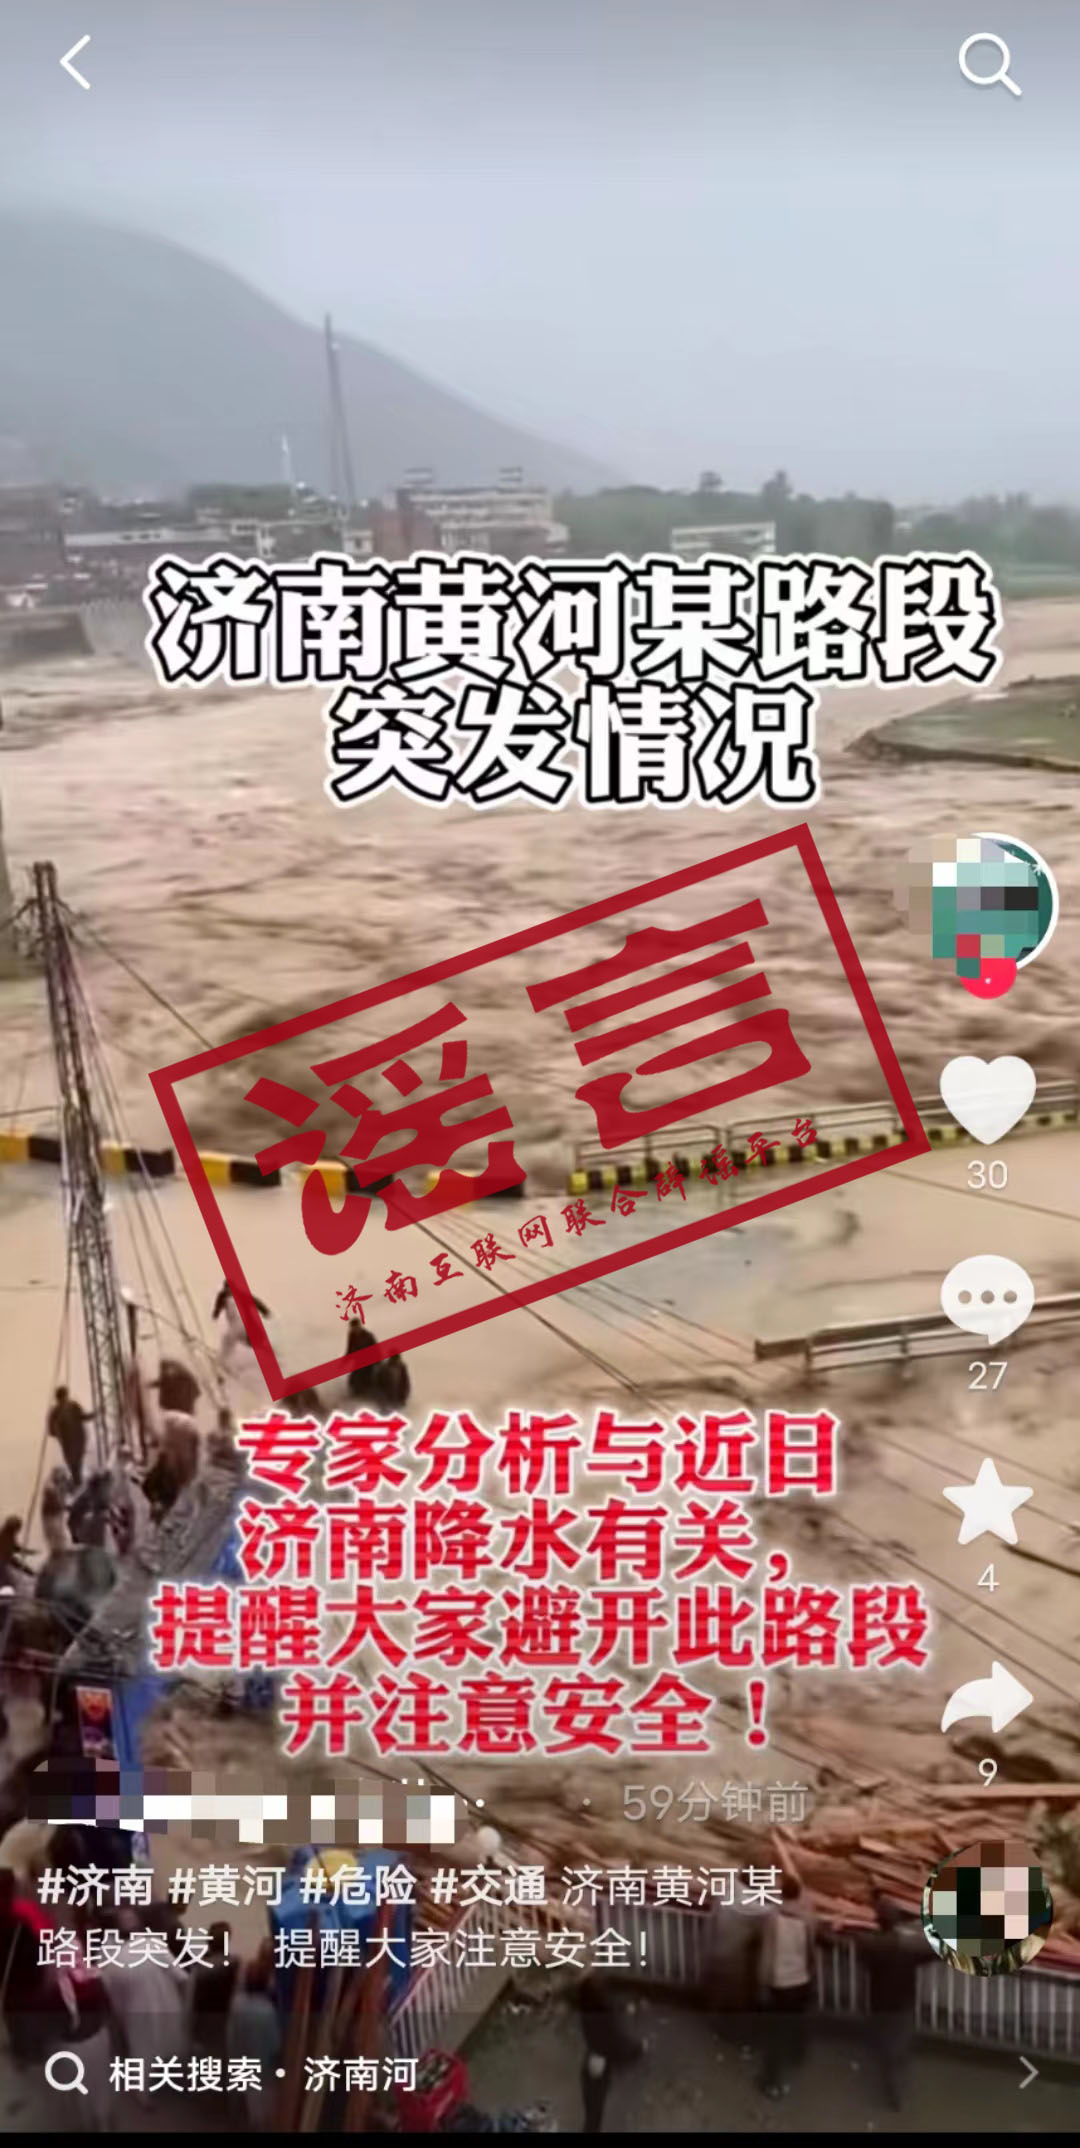 “济南黄河某路段突发情景” 为假新闻！